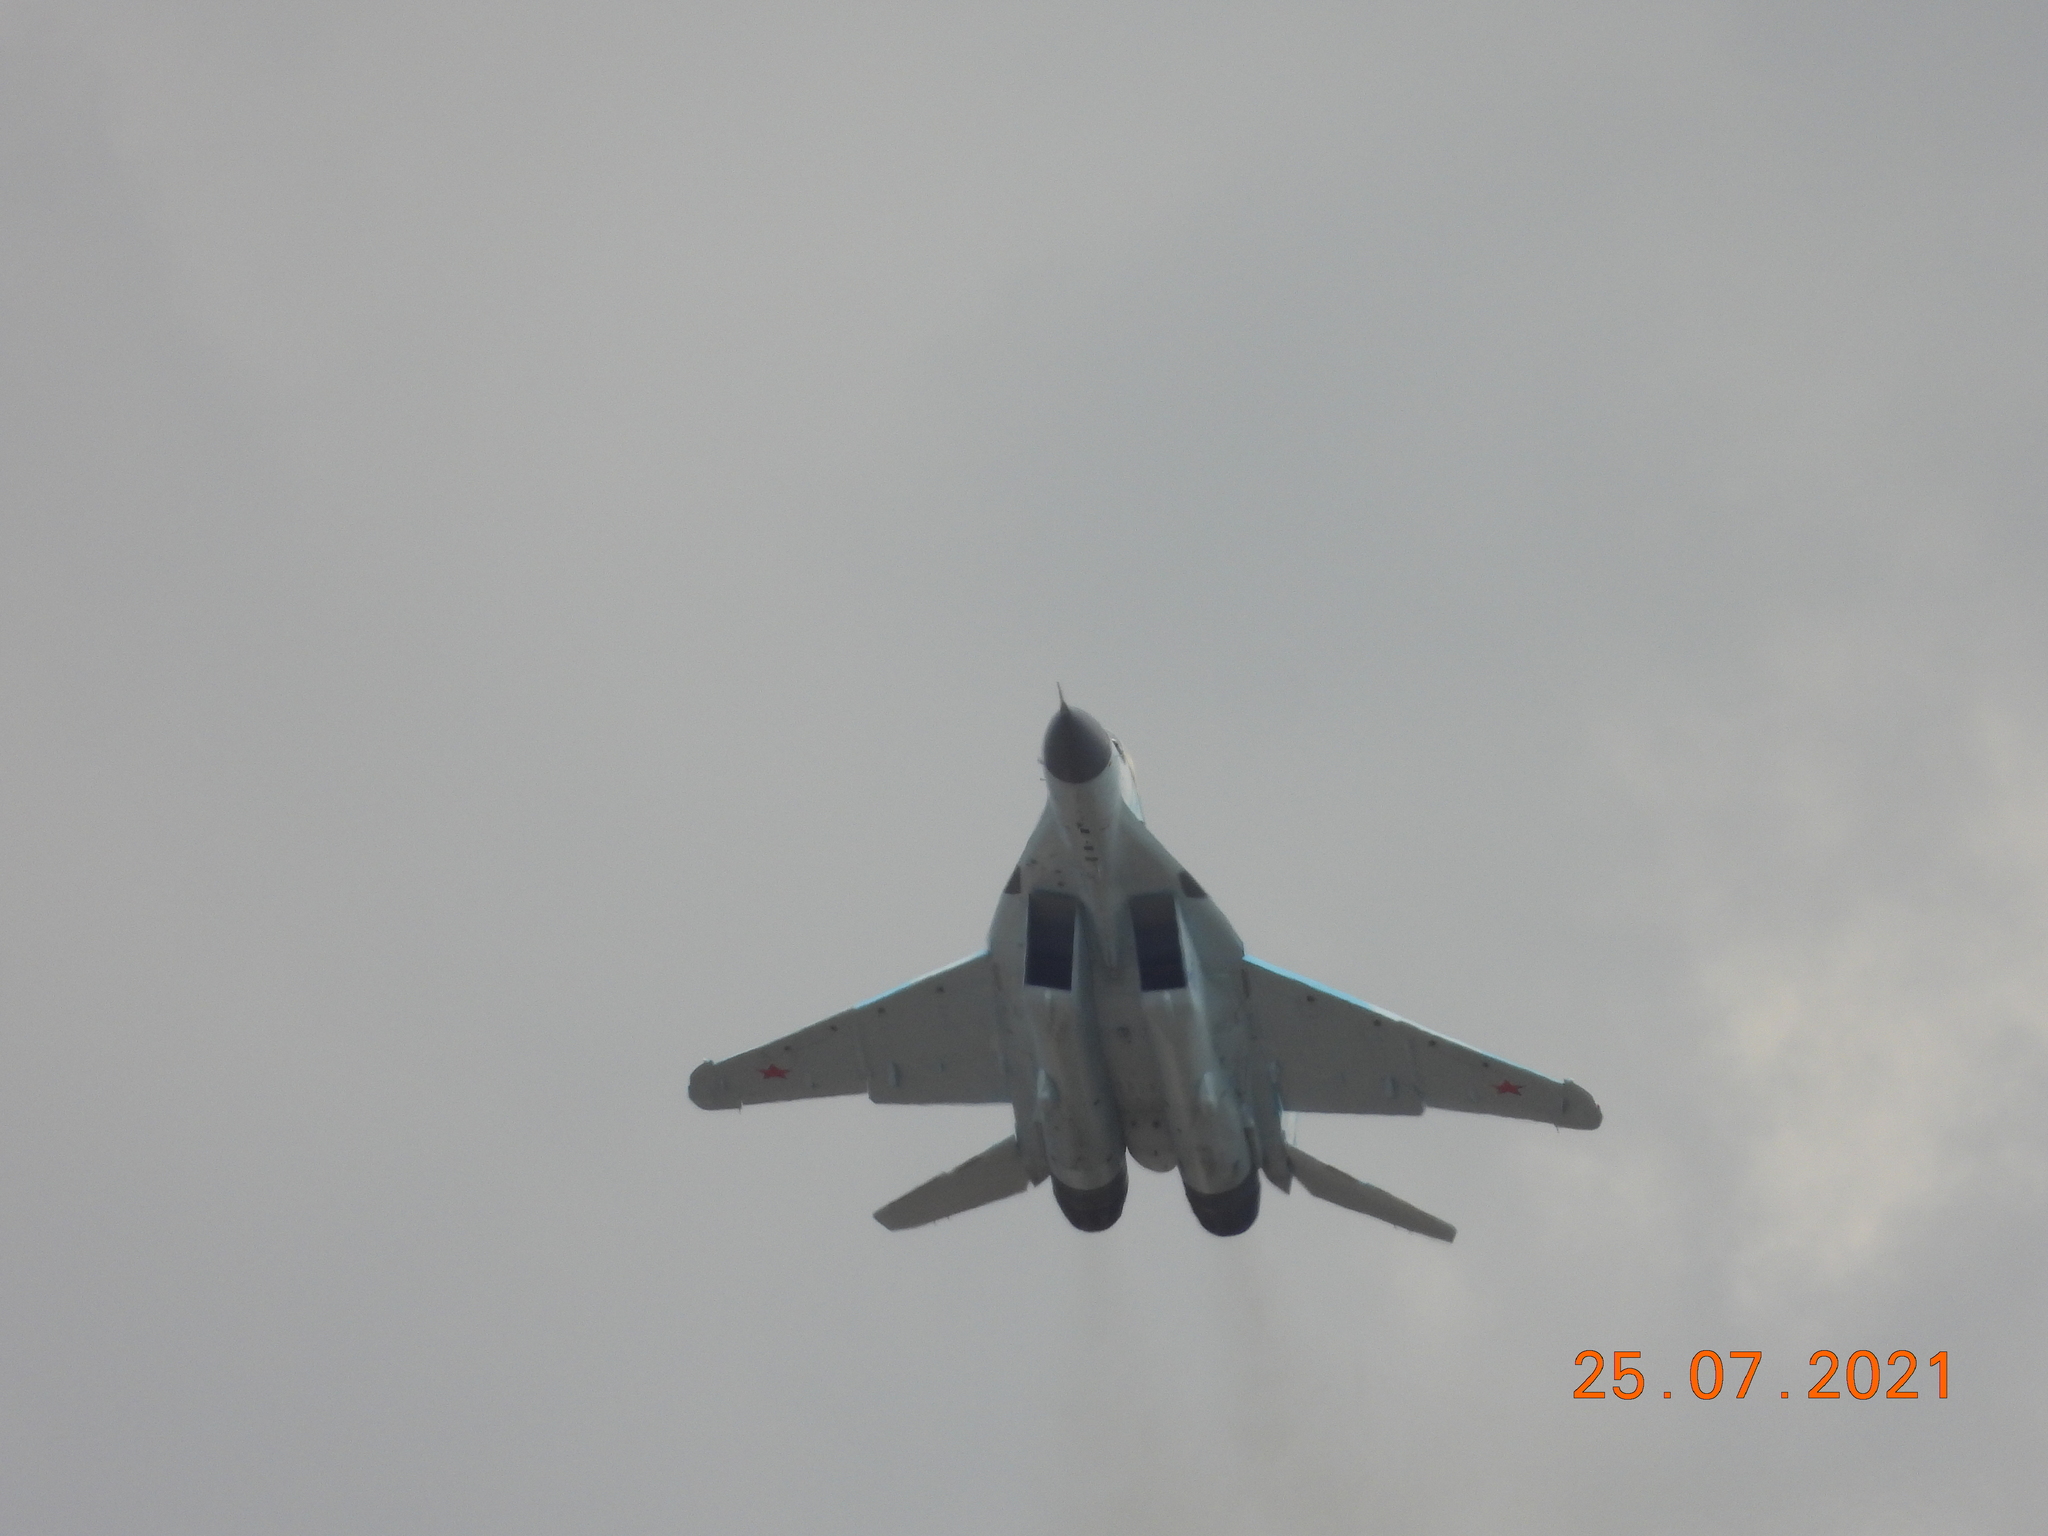 MAKS-21 - My, MAKS (air show), Air force, Aviation, Airshow, Military aviation, MiG-31, Mig-35, Su-34, Su-57, Su-35, Su-30cm, MS-21-300, Longpost